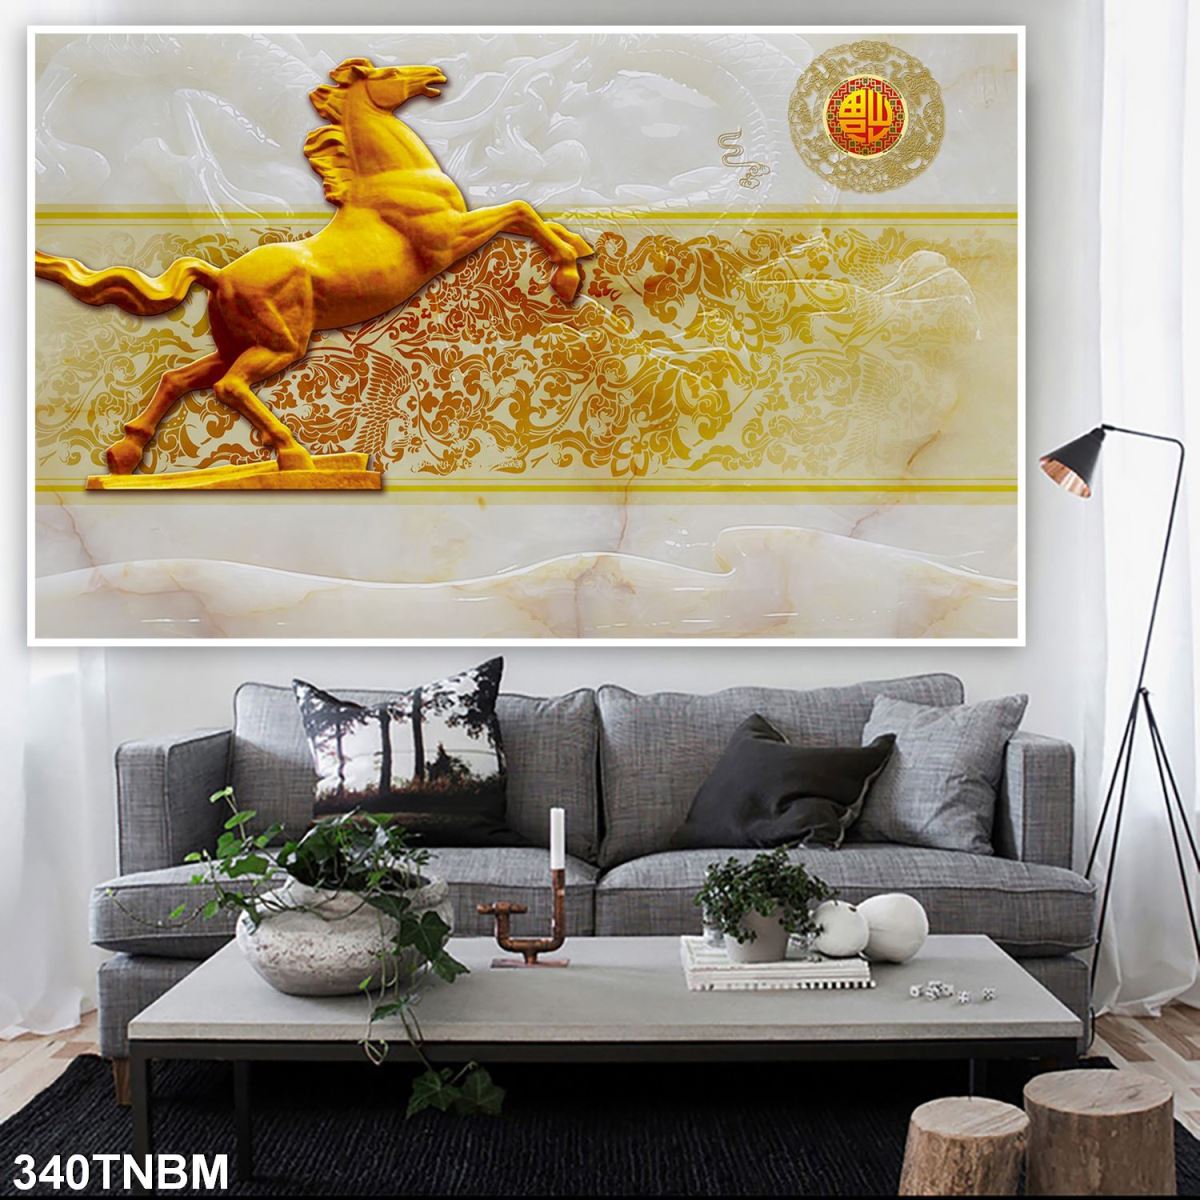 Tranh in hình 8 chú ngựa trên gạch men